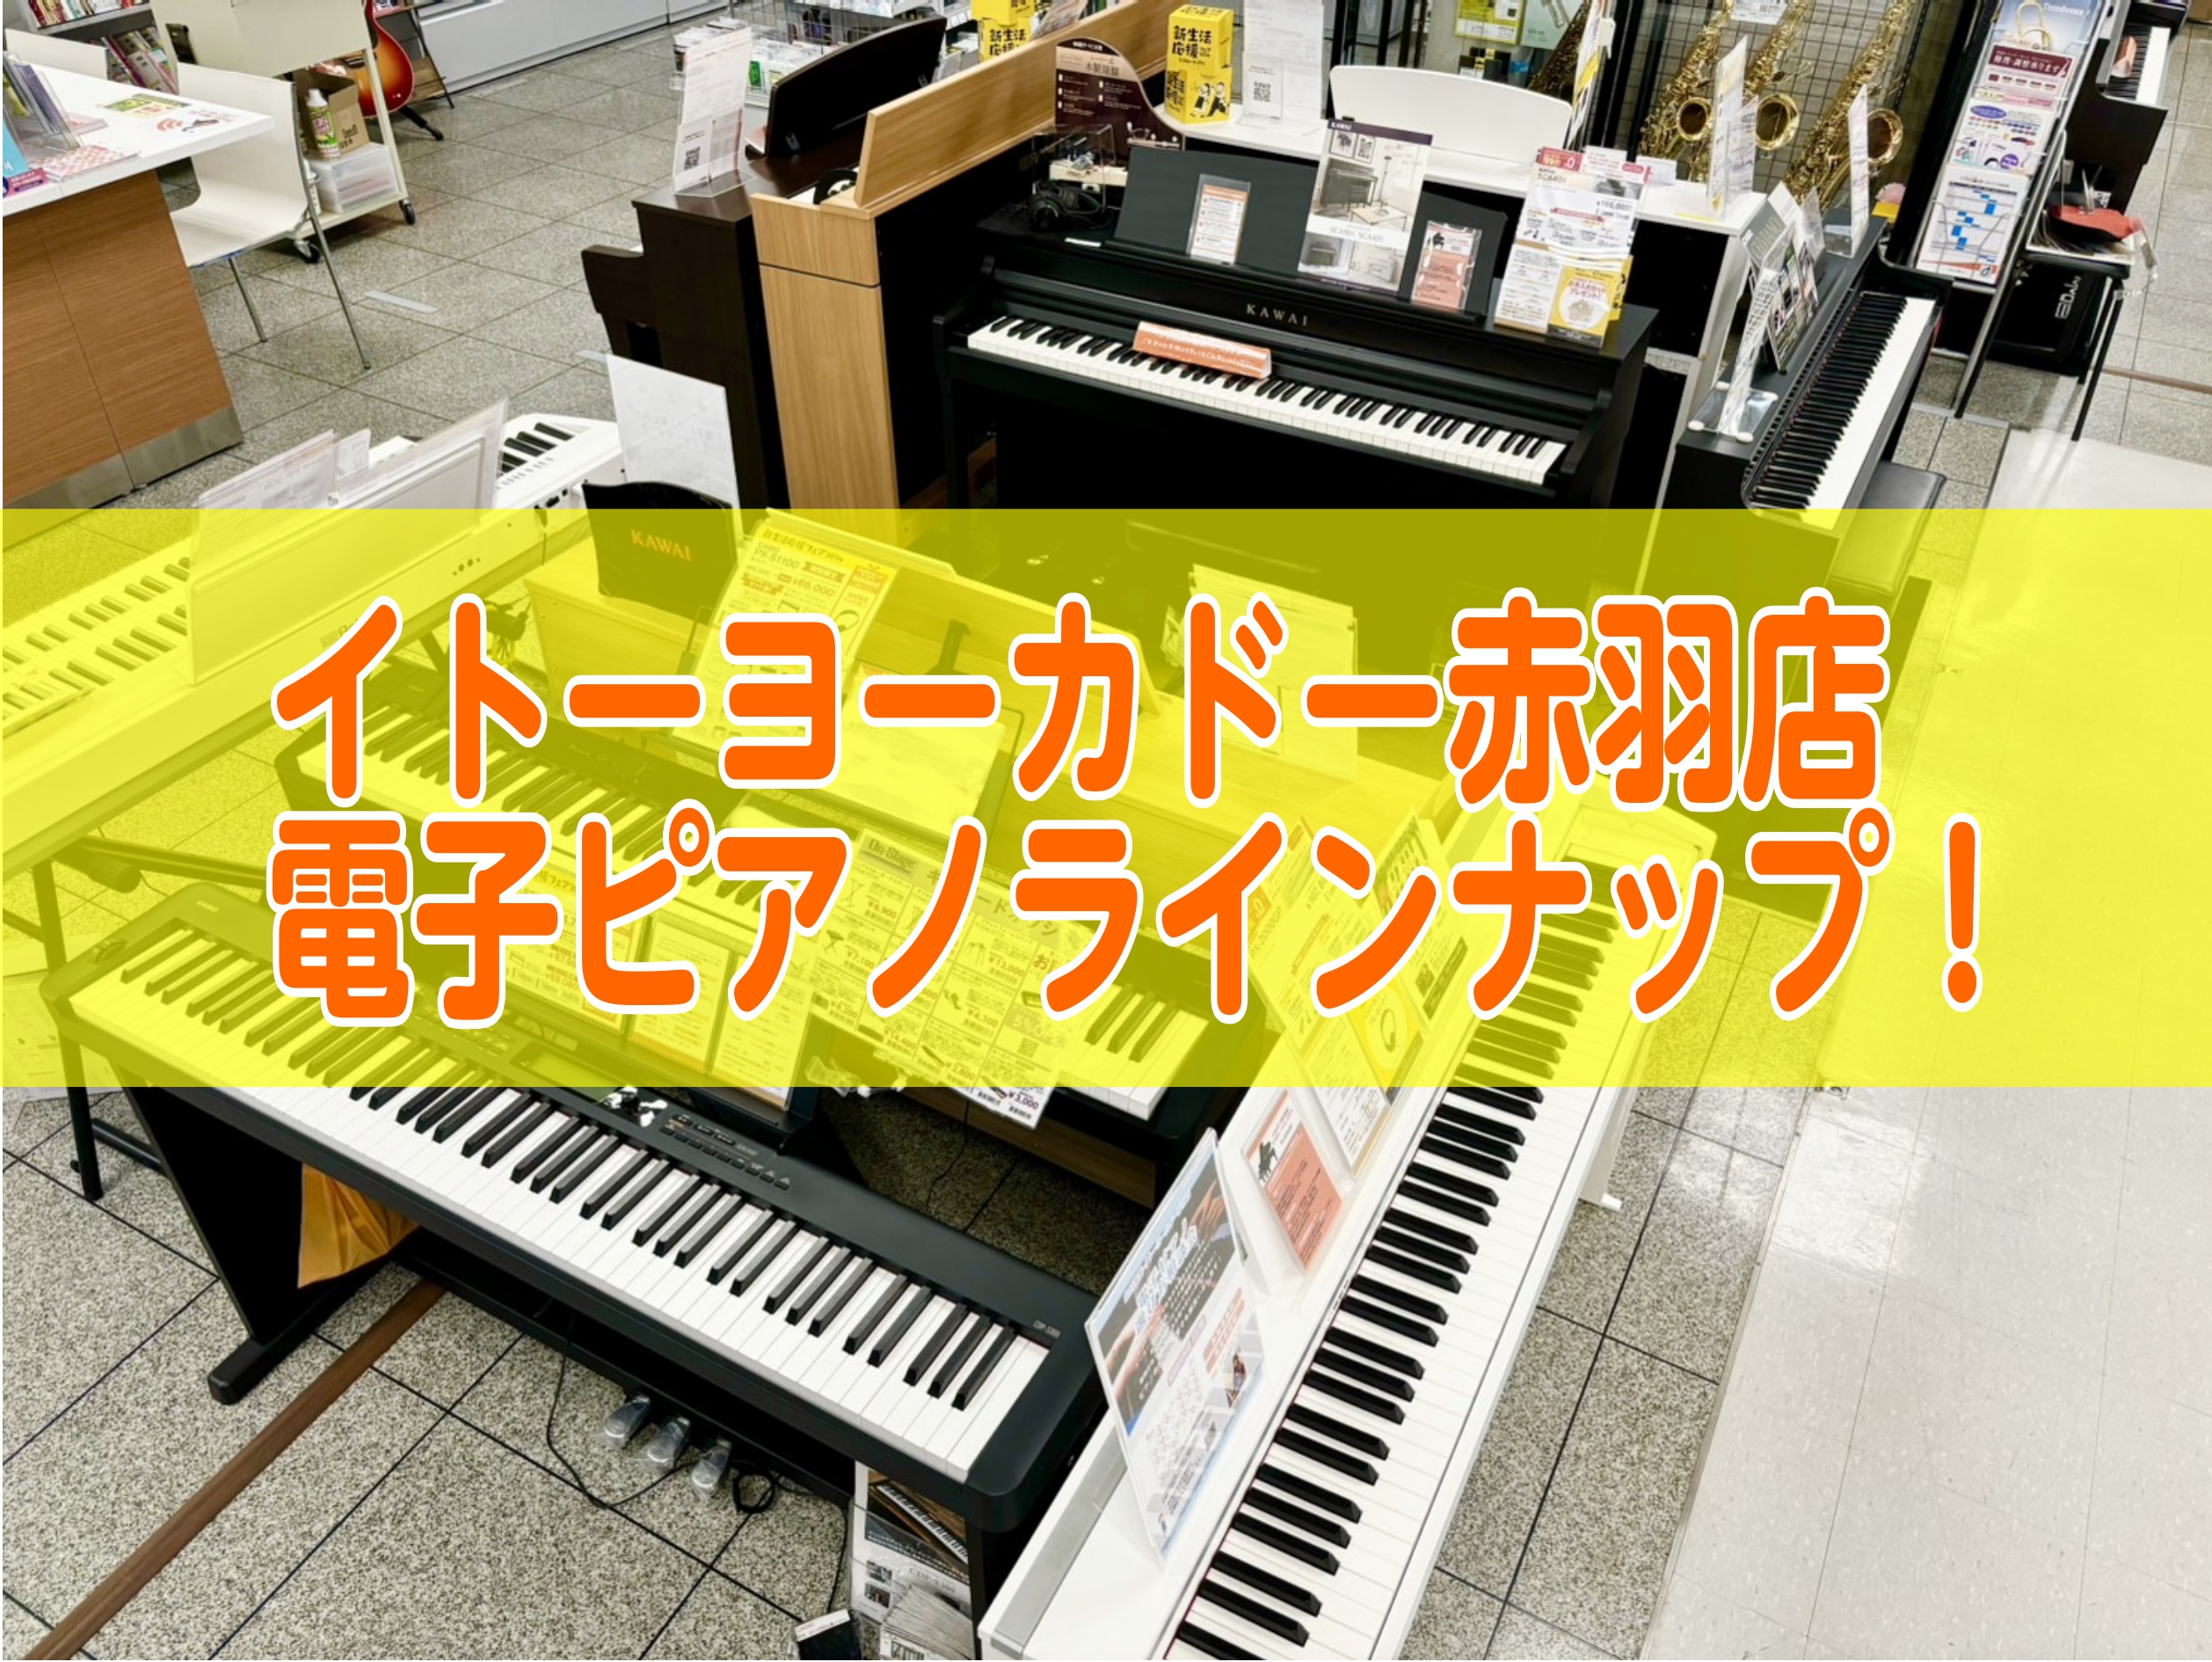 イトーヨーカドー赤羽店では、各メーカーの電子ピアノを多数展示しております！ゆっくりじっくり、実際に試弾してお選びいただけます！また、電子ピアノ選び方相談会にご予約いただけますと、機種の特徴やおすすめポイントをご案内させていただきます♪是非赤羽店でお待ちしております！ CONTENTSYAMAHAKA […]